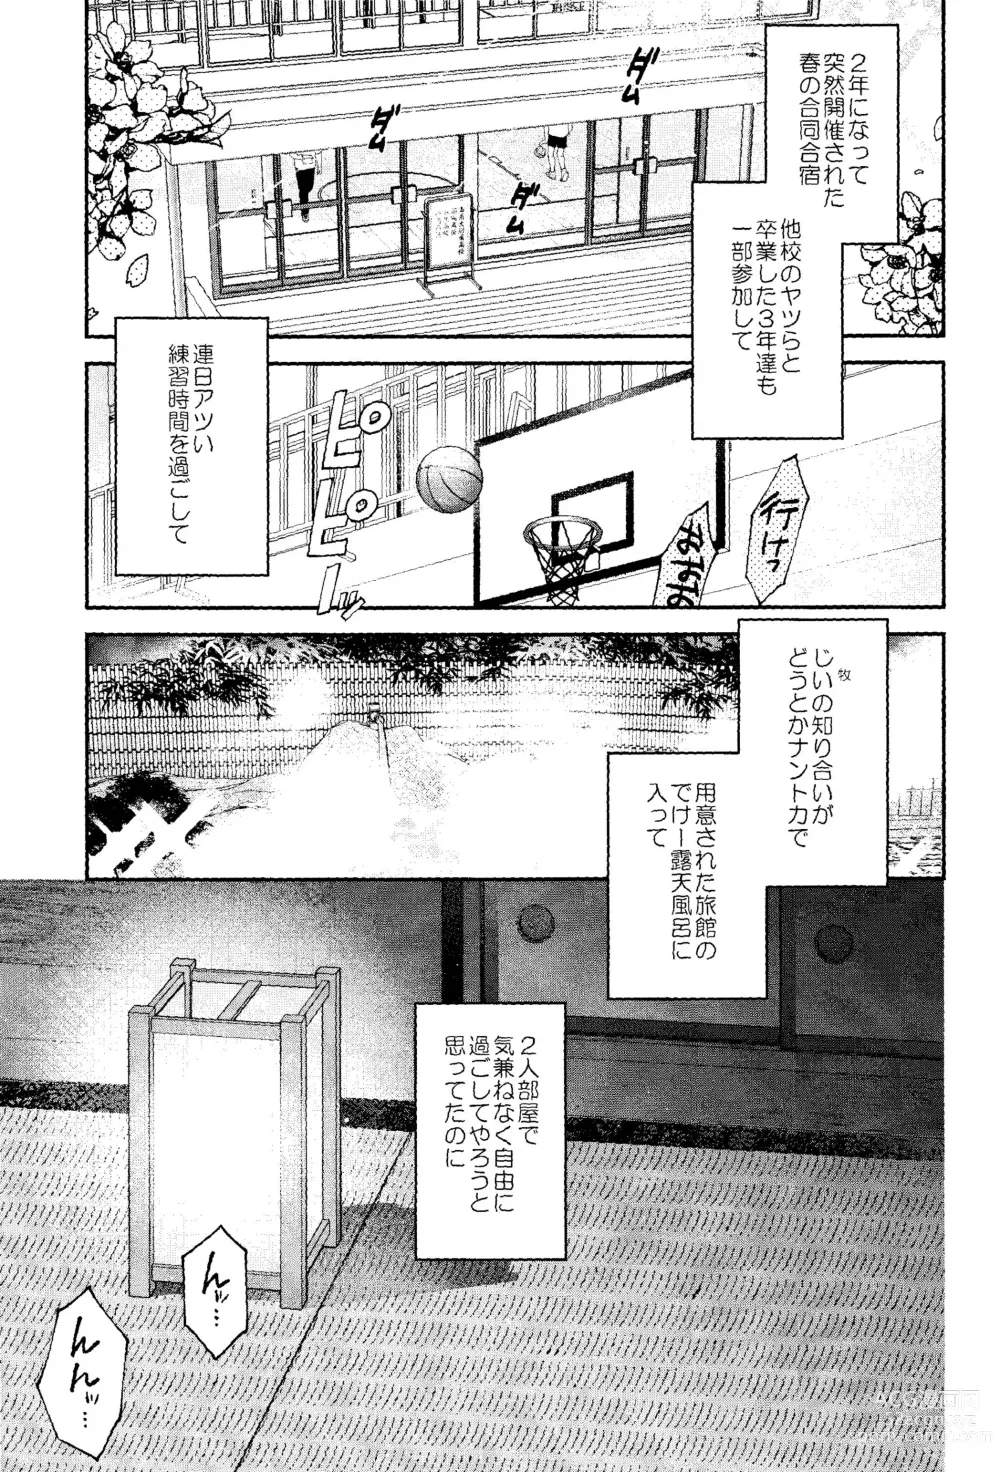 Page 3 of doujinshi Subeteha Kawaii teme-no Sei!